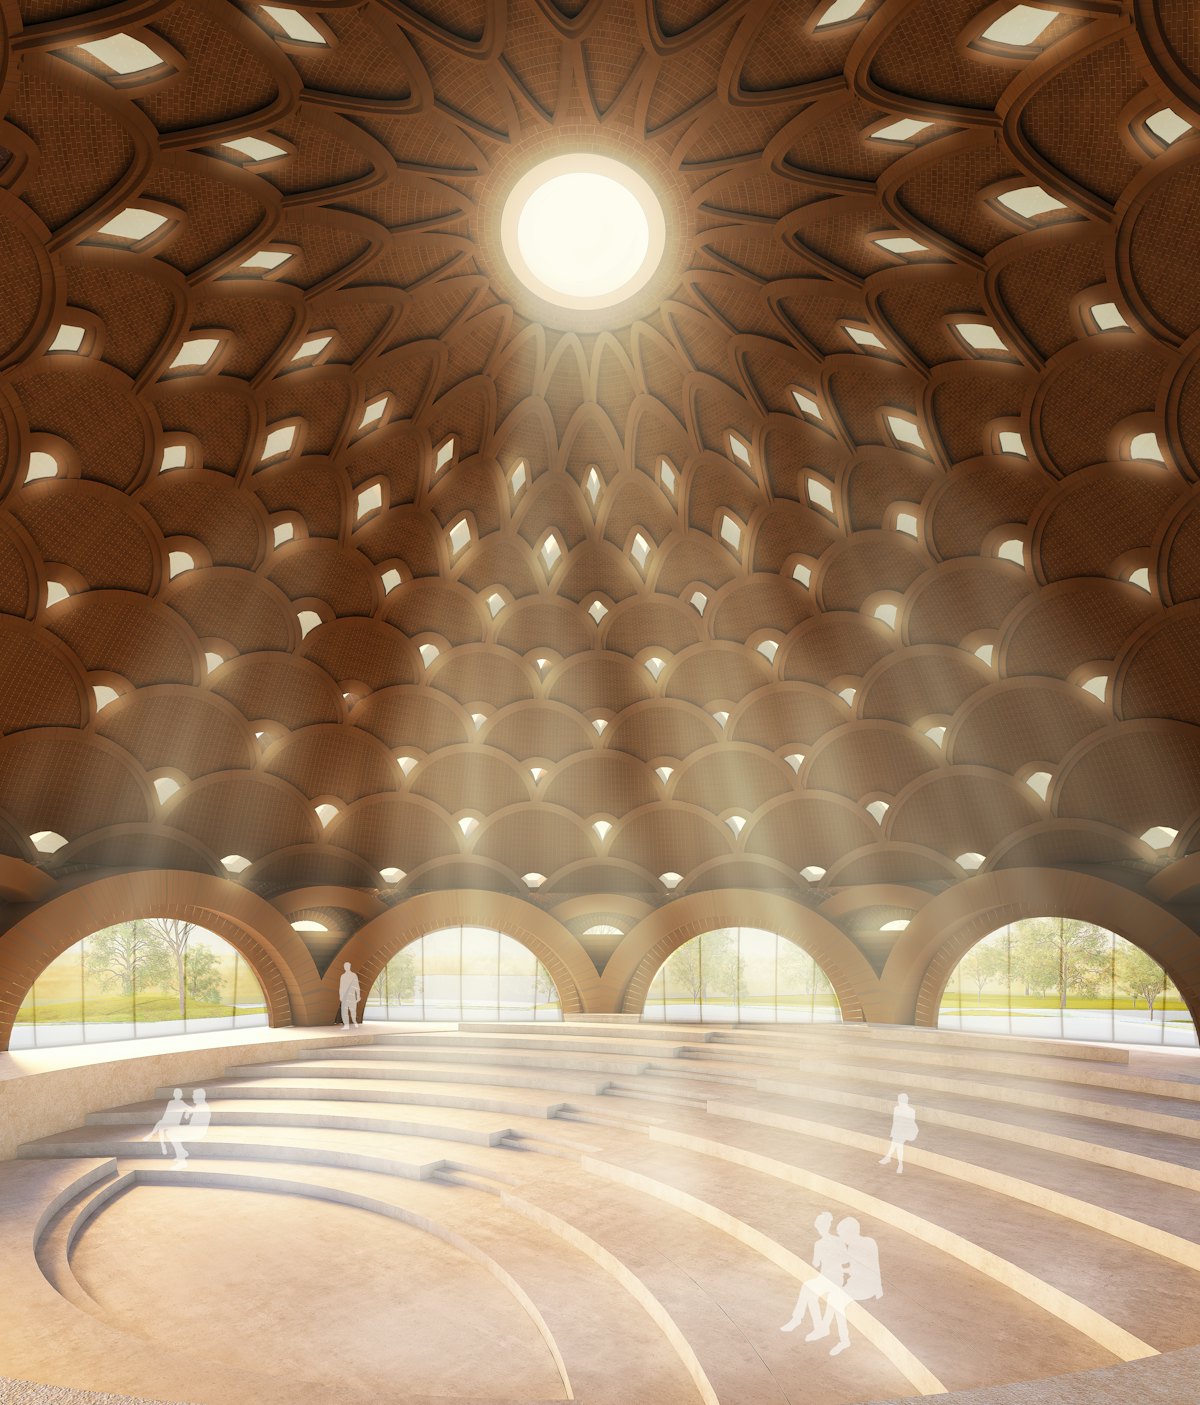 Las aberturas en el centro de la cúpula y en cada anillo hilera de arcos reducirán el peso del techo,  al tiempo que permite que se filtre una luz suave